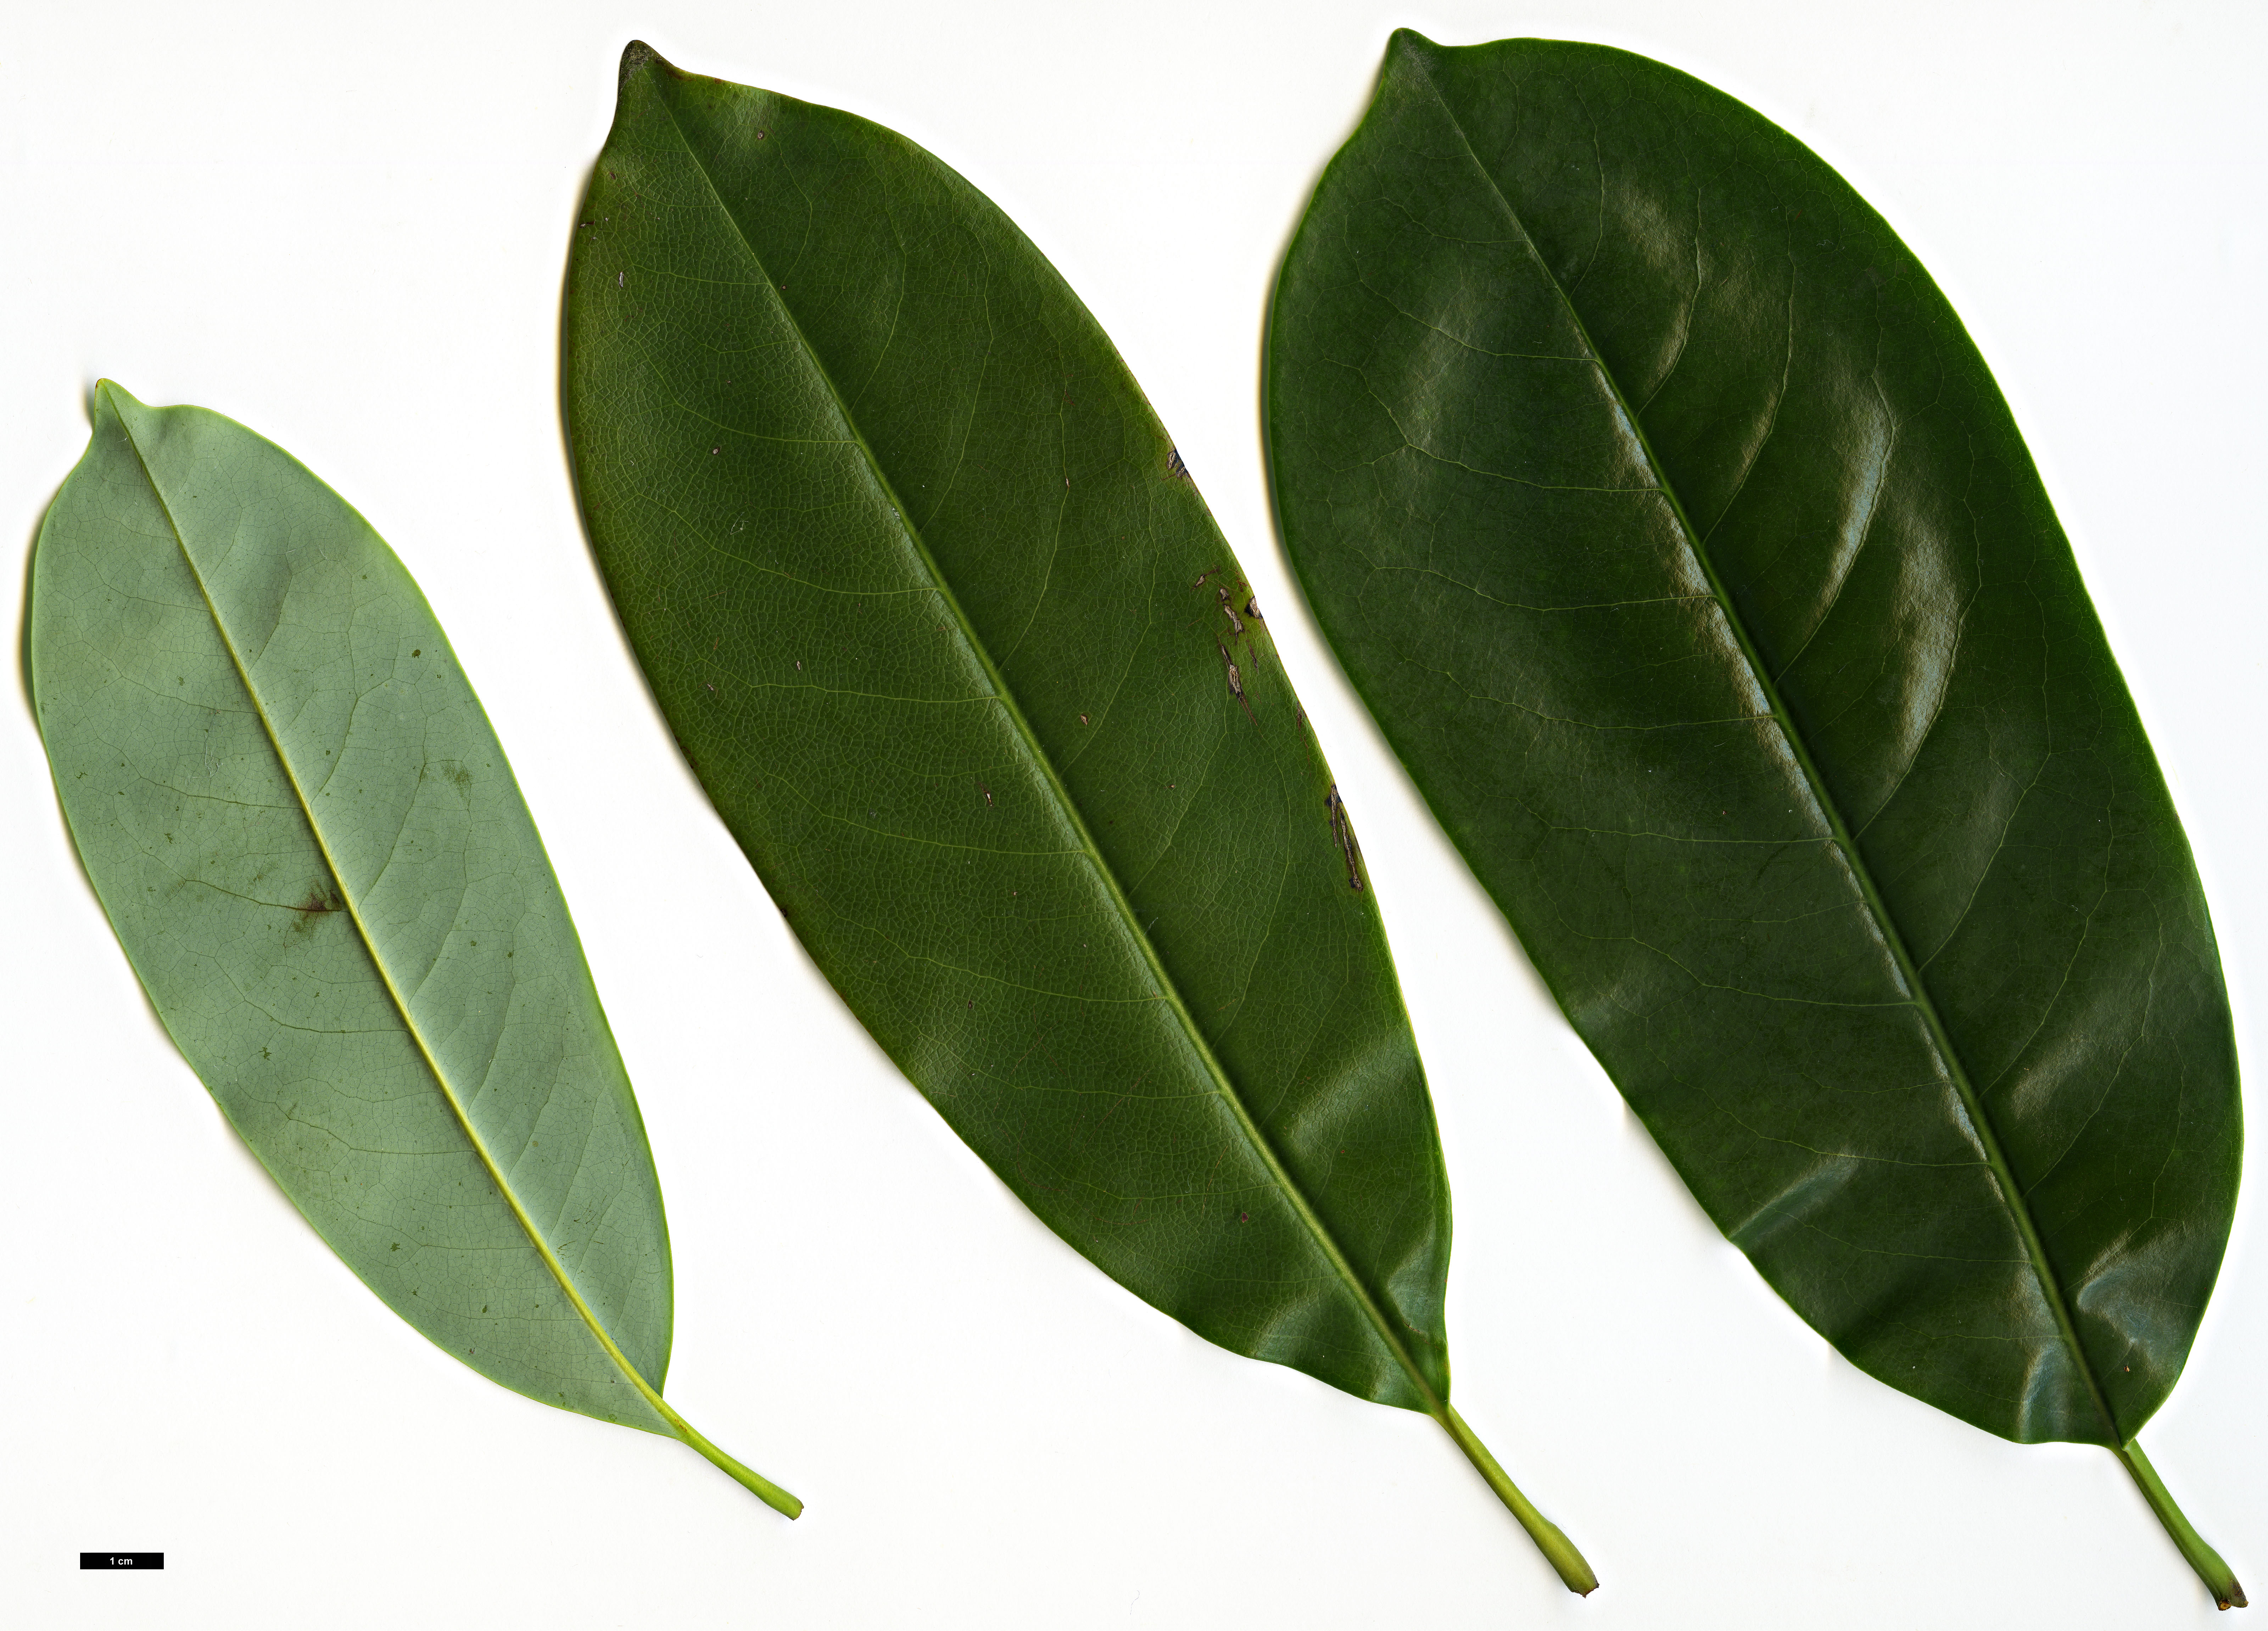 High resolution image: Family: Magnoliaceae - Genus: Magnolia - Taxon: maudiae